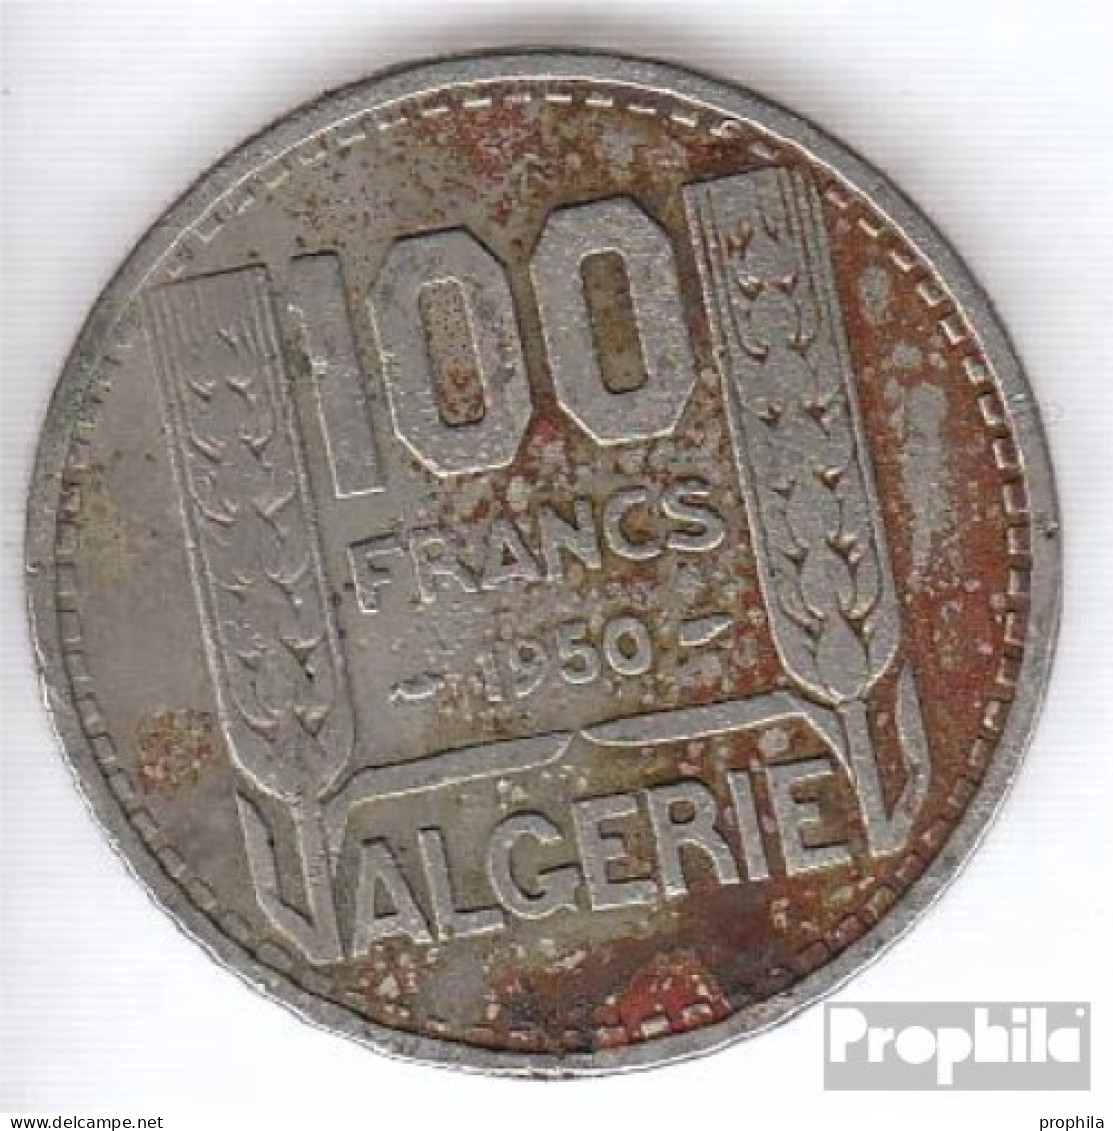 Algerien KM-Nr. : 93 1950 Sehr Schön Kupfer-Nickel Sehr Schön 1950 100 Francs Laureate - Algerien